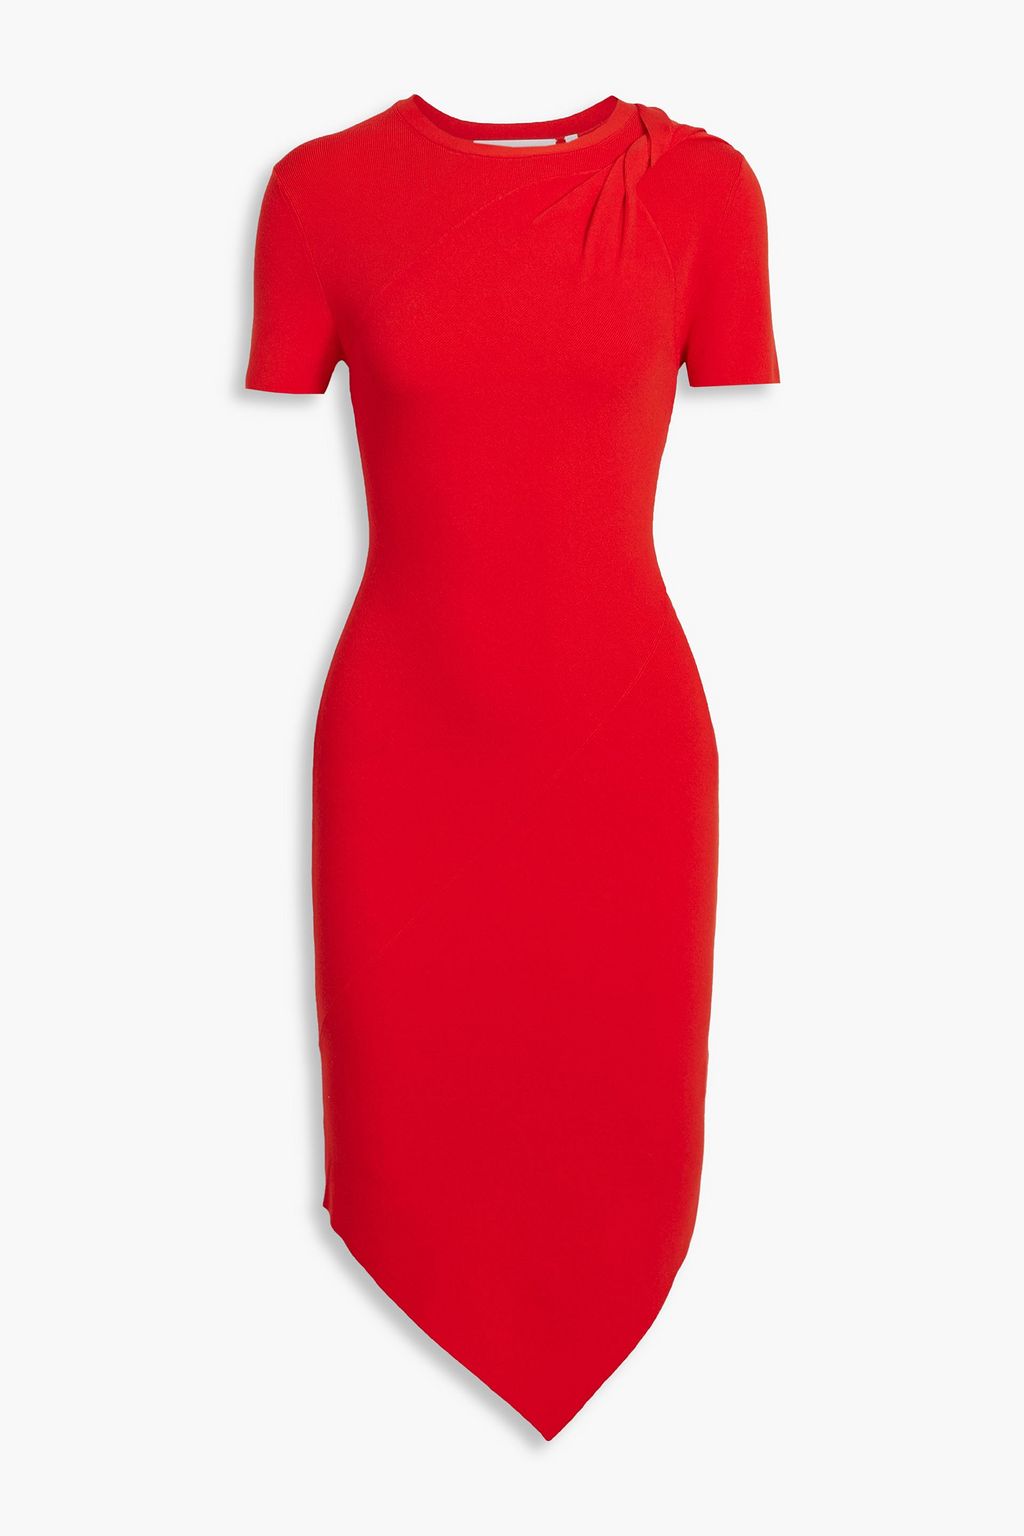 платье helmut lang j06hw604 красный l Асимметричное платье перекрученной вязки в рубчик. HELMUT LANG, красный